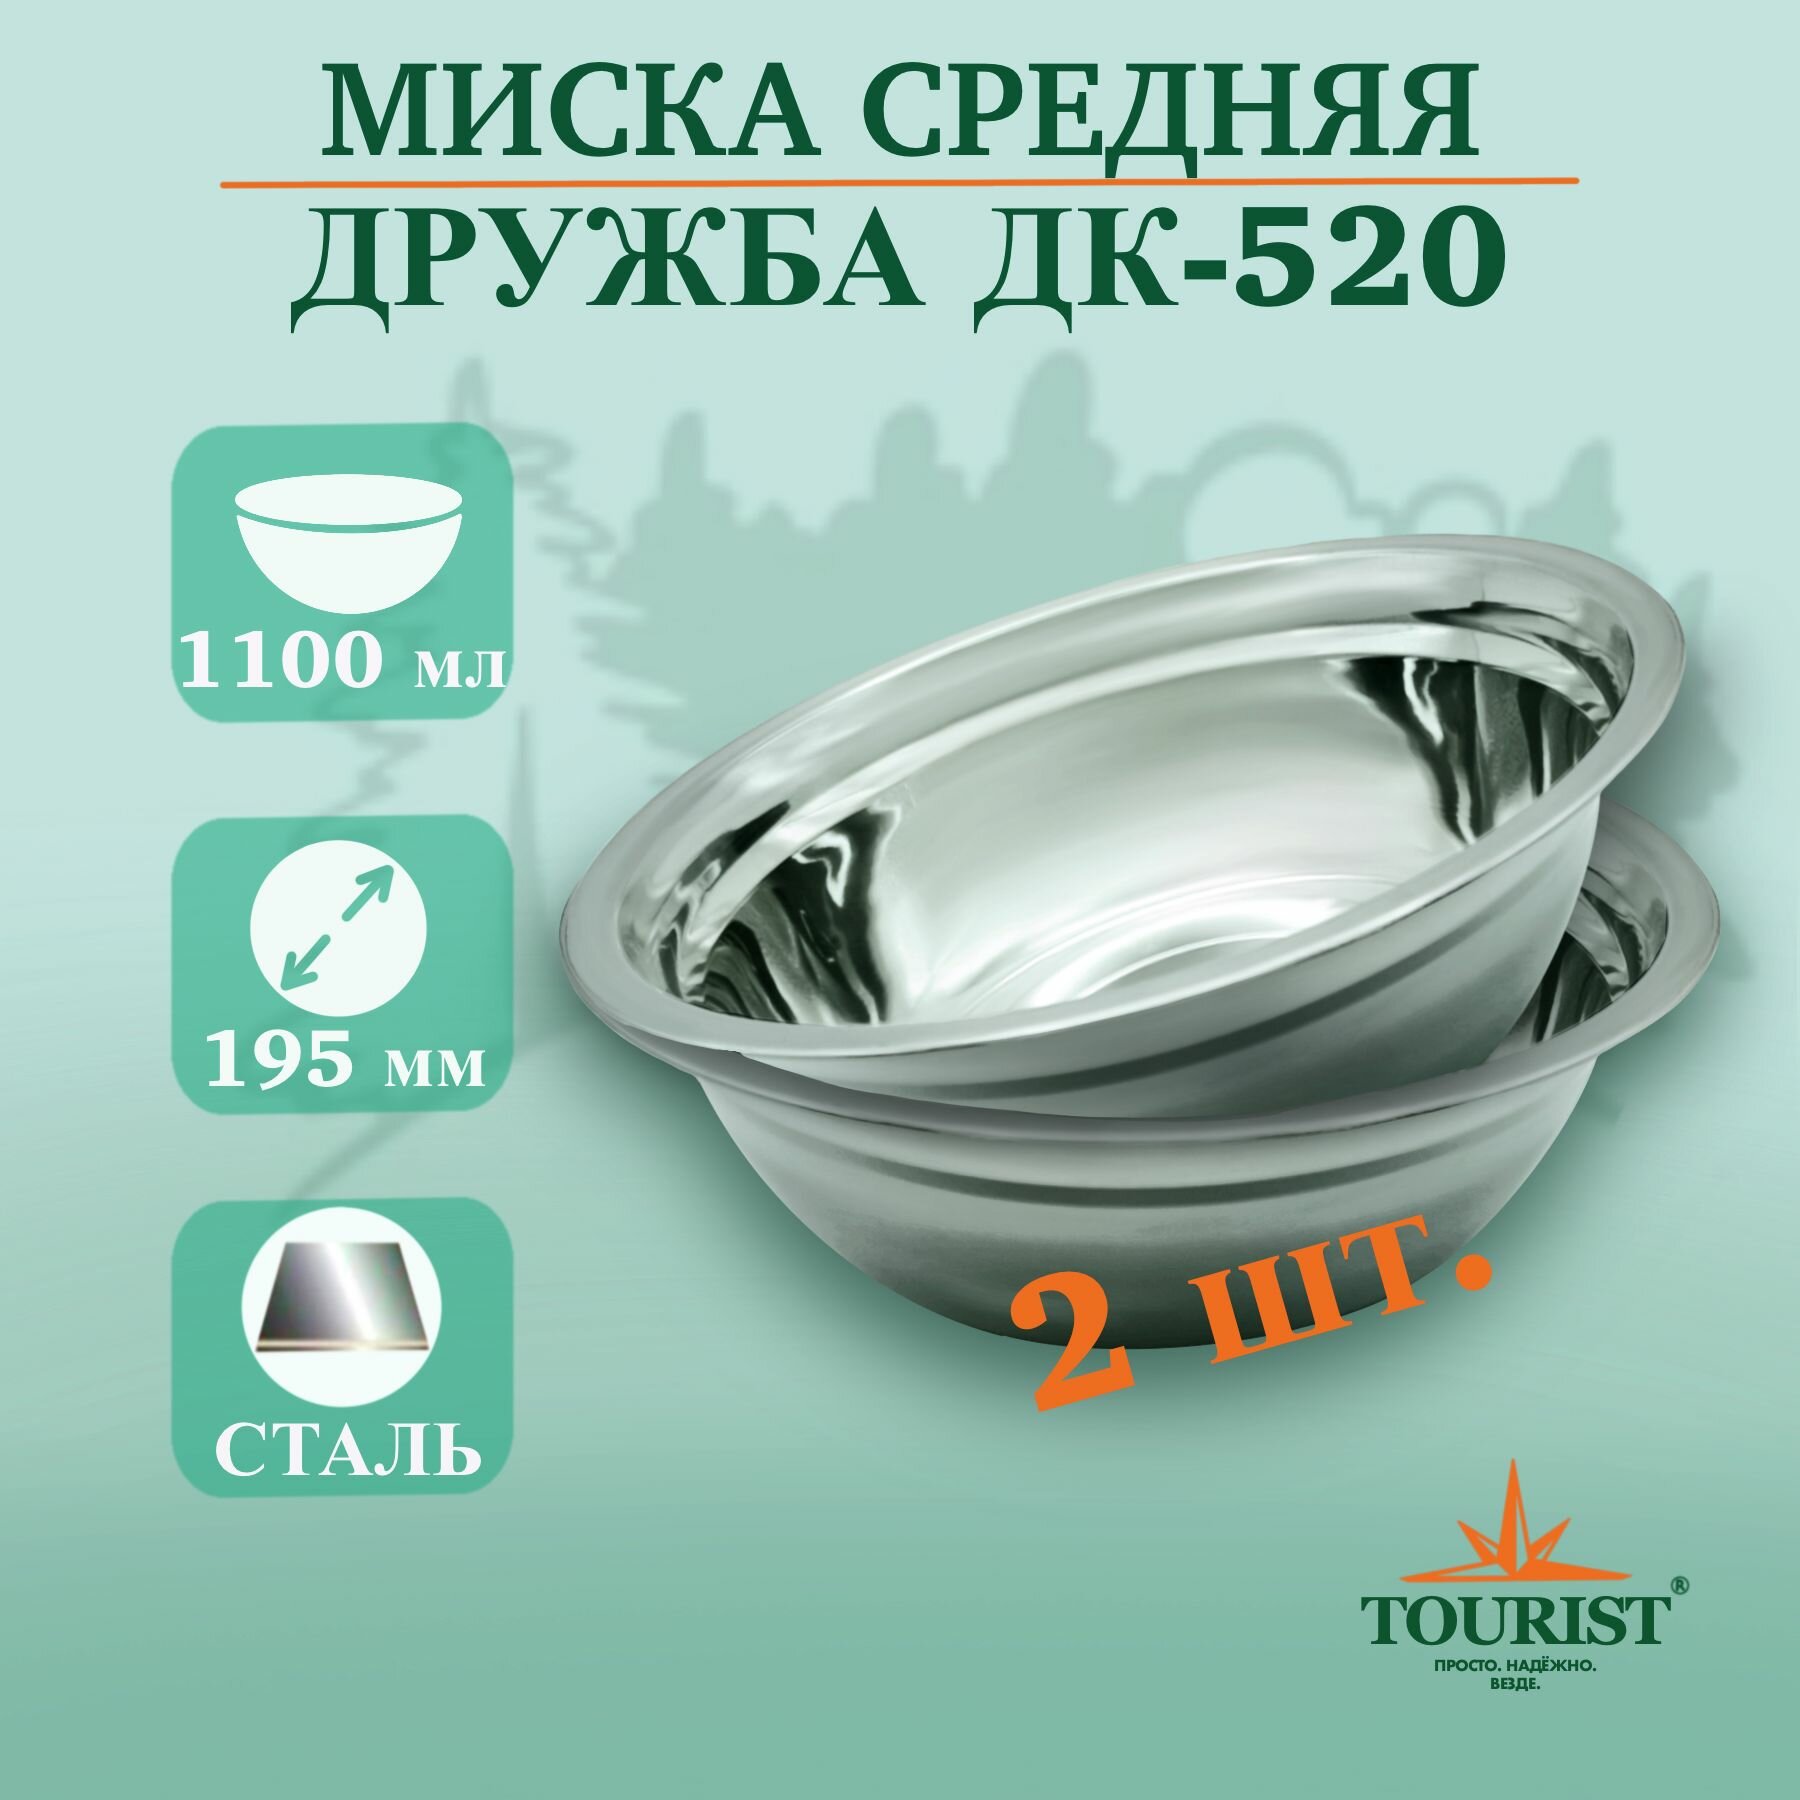 Набор тарелок миска походных туристических 2 шт. Дружба ДК 520 объем 1,1 литра для рыбалки, охоты, туризма и выезда на пикник